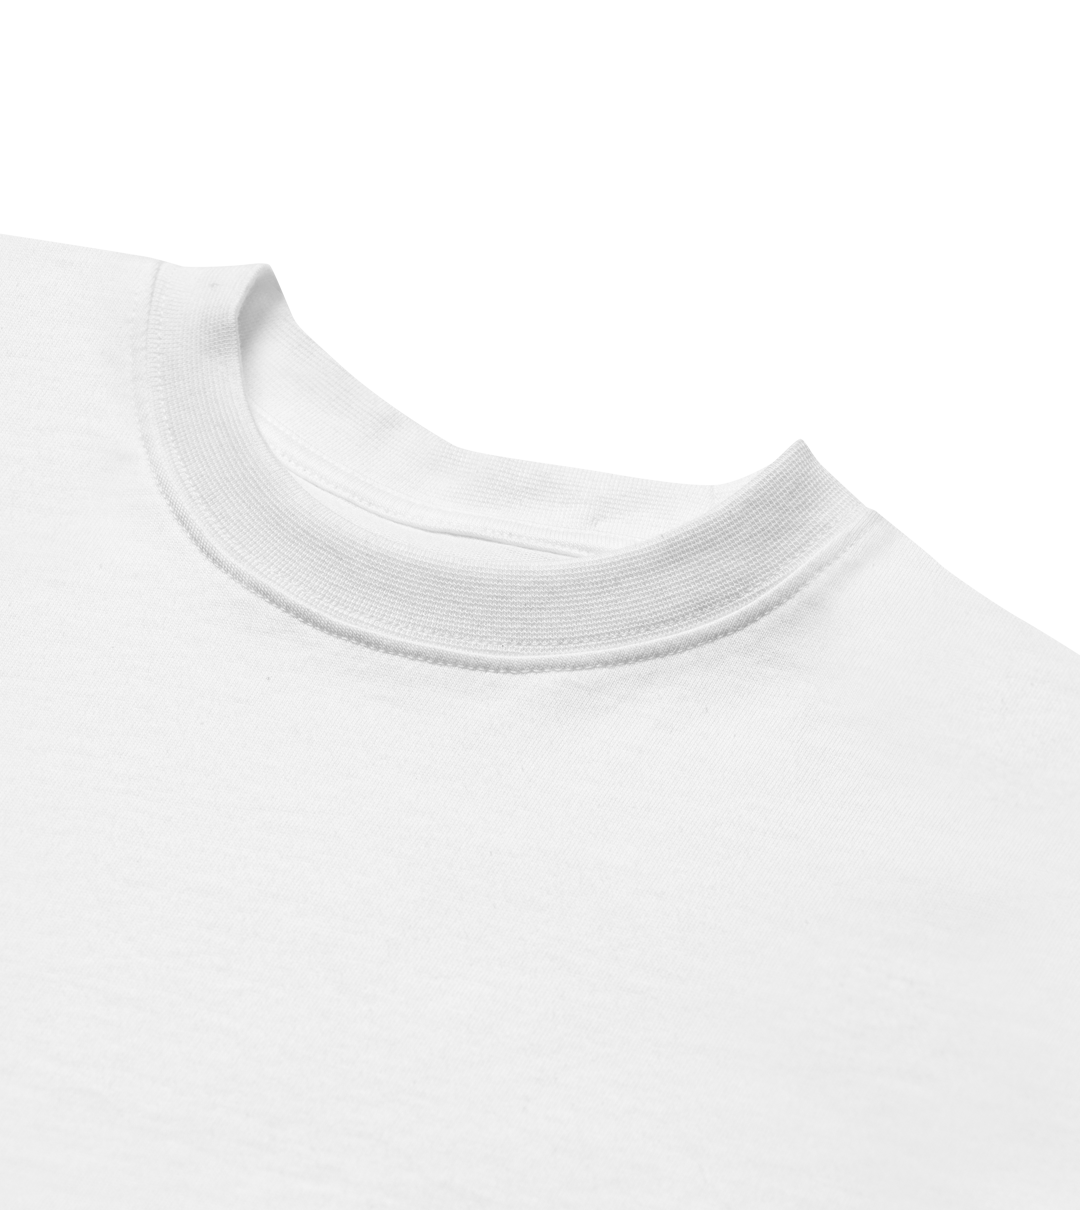 Norregård - Börjat om T-Shirt